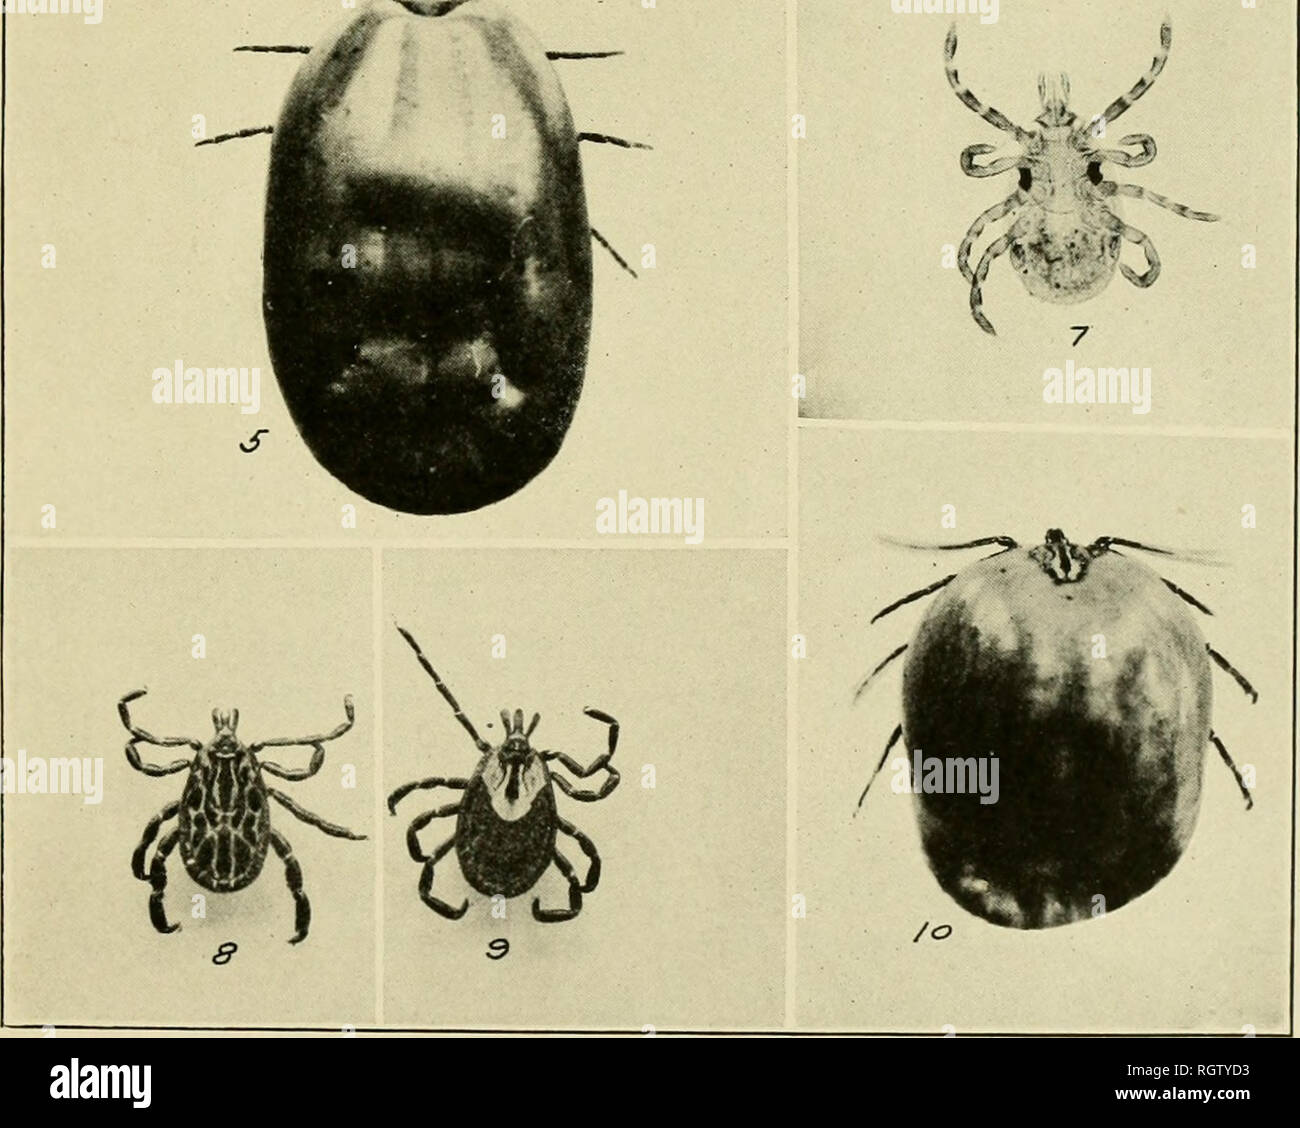 . Bollettino. Insetti; pesti di insetto; Entomologia; insetti; pesti di insetto; Entomologia. . / '^X. L'Iguana Tick, Amblyomma dissimile, e la costa del Golfo del Messico Tick, Amblyomma maculatum. Amblyomma dissimile: Fig. 1.-Unengorged larva. Fig. 2.-Unengorged njTnph (balsam mount). Fig. 3.-maschio, vista dorsale. Fig. 4.-Unengorged femmina, vista dorsale. Fig. 5.-completamente congestioni femmina (vivo). Amhlyumma maculatum: Fig. 6.-Unengorged larva. Fig. ".-Unengorged nymph (balsam mount). Fig. 8.-maschio, vista dorsale. Fig. 9.-Unengorged femmina, vista dorsale. Fig. 10.-congestioni femmina, vista dorsale. (Originale). Si prega di notare che Foto Stock